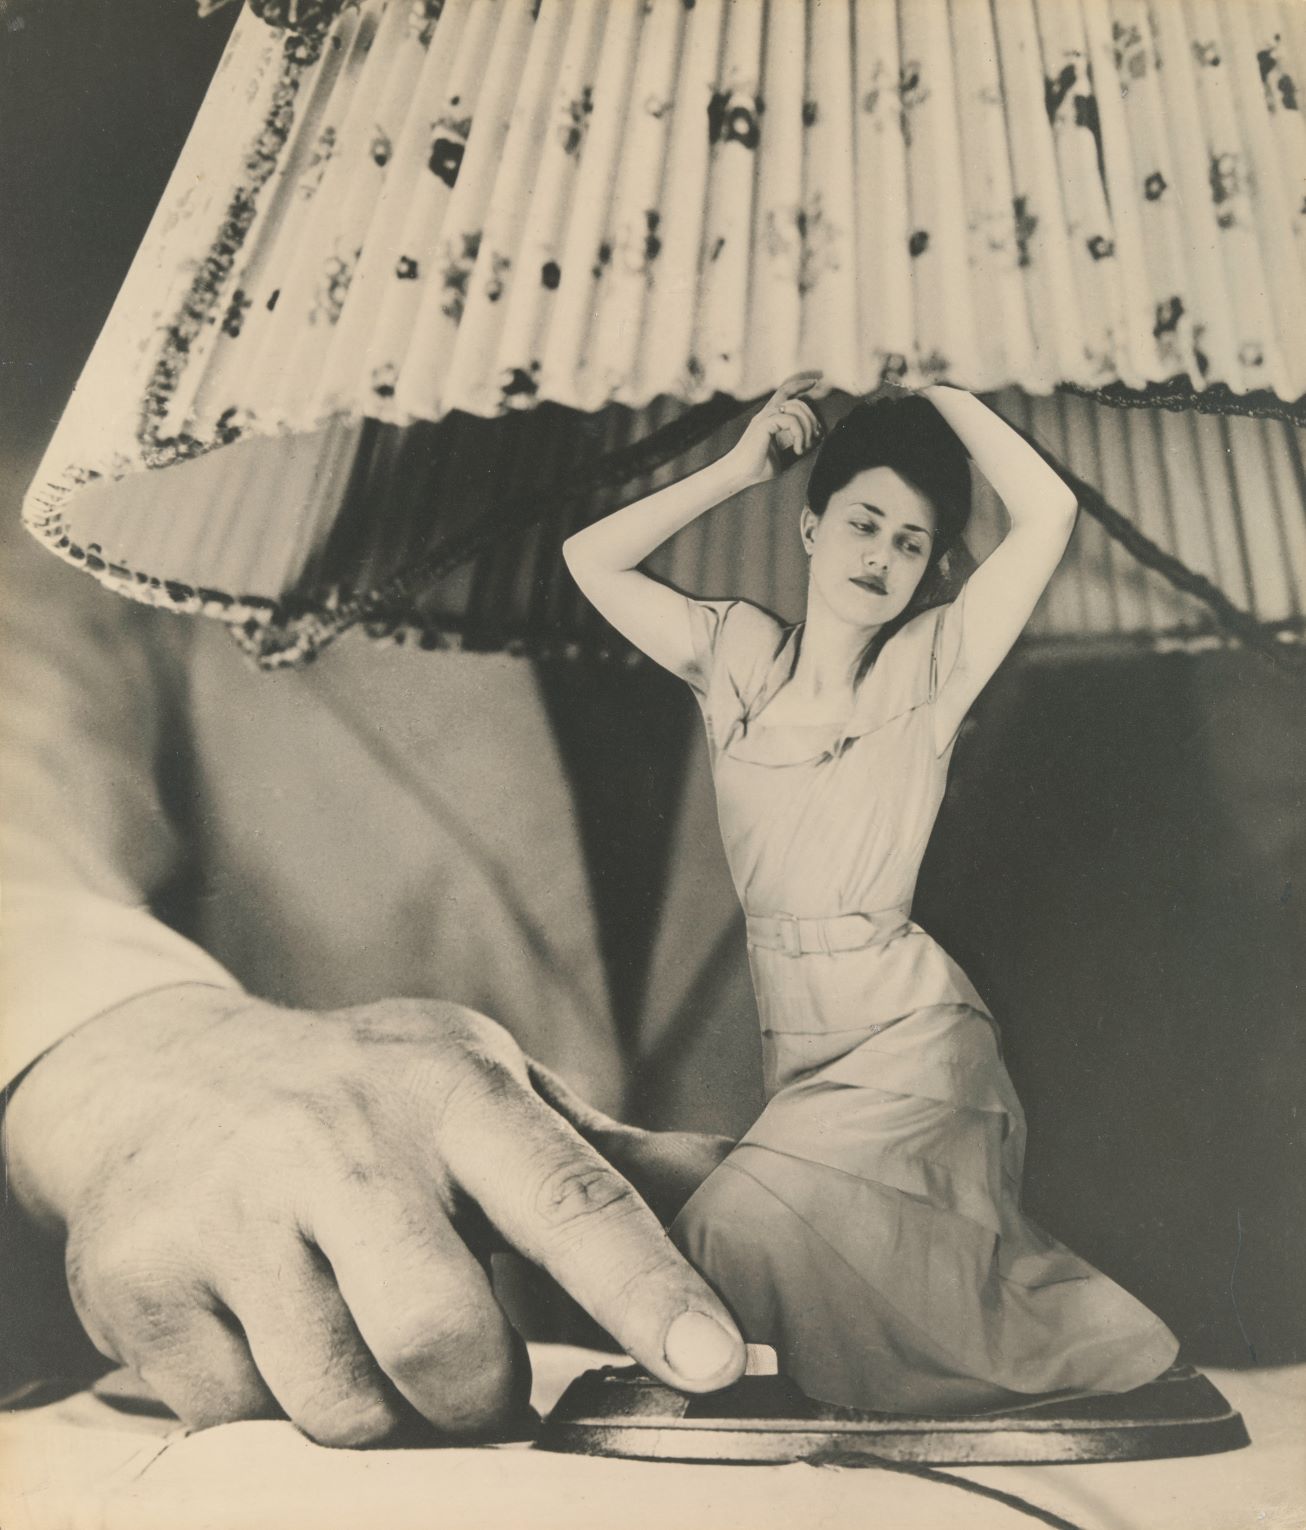 Grete Stern, Sueño No. 1: “Articulos eléctricos para el hogar,” c.1950, gelatin silver print. From the Surrealism entry in Art = 